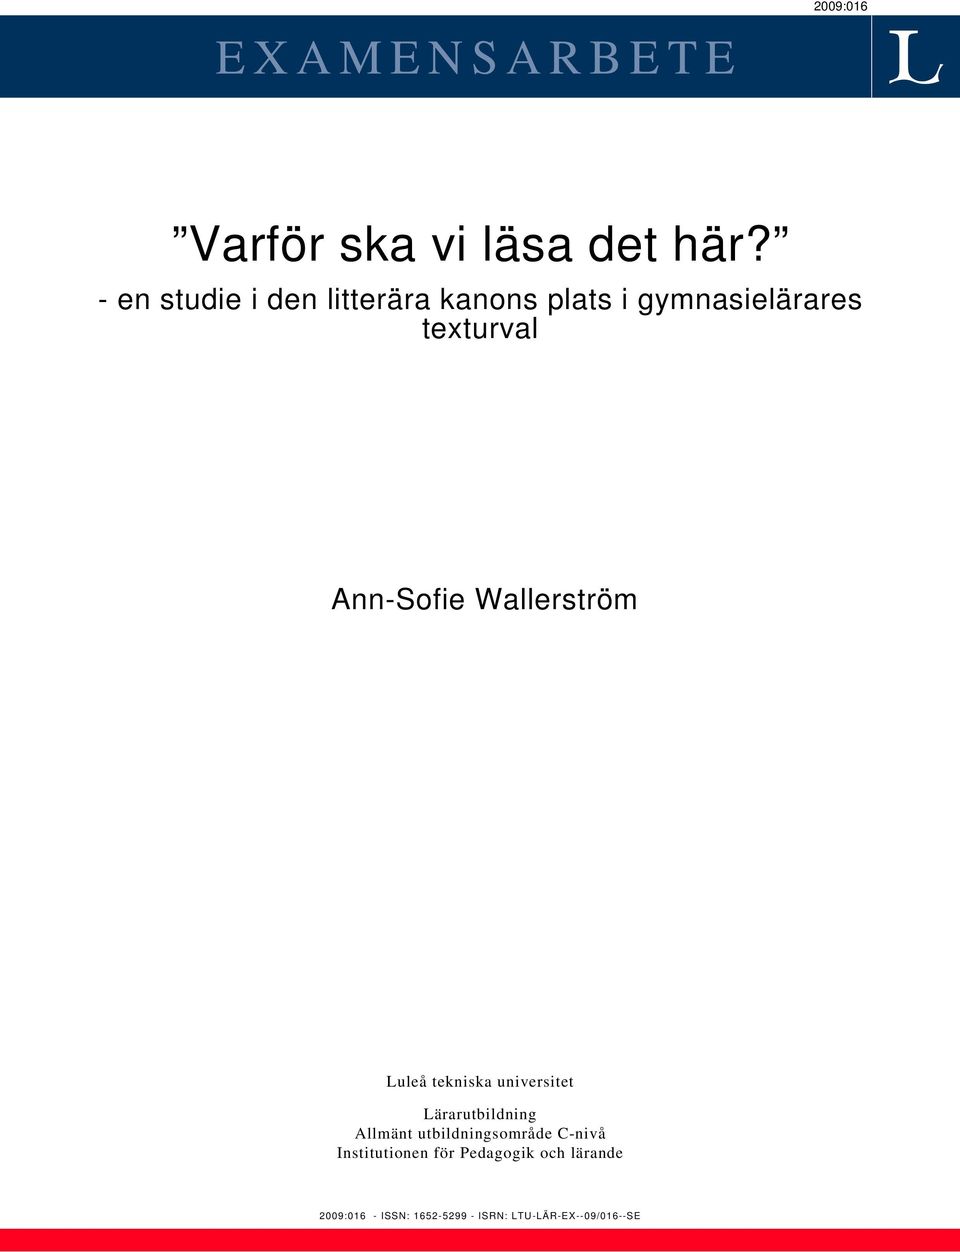 Wallerström Luleå tekniska universitet Lärarutbildning Allmänt